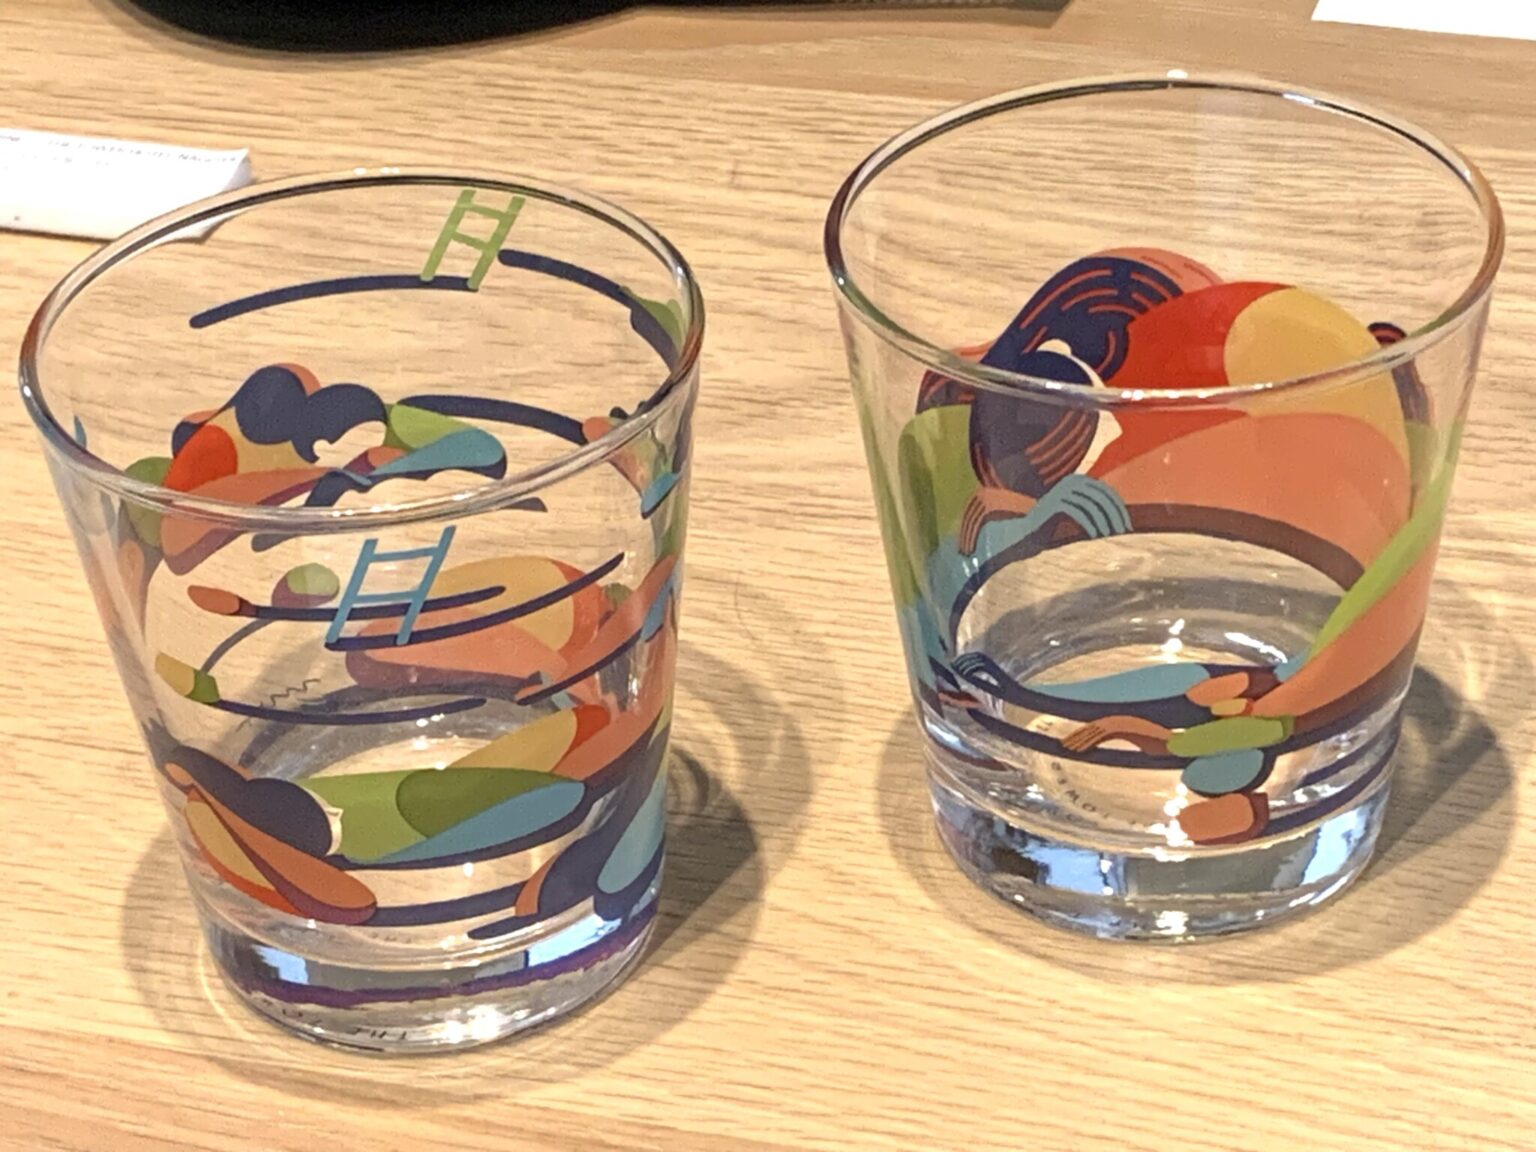 鷲尾 友公氏デザインのグラス。